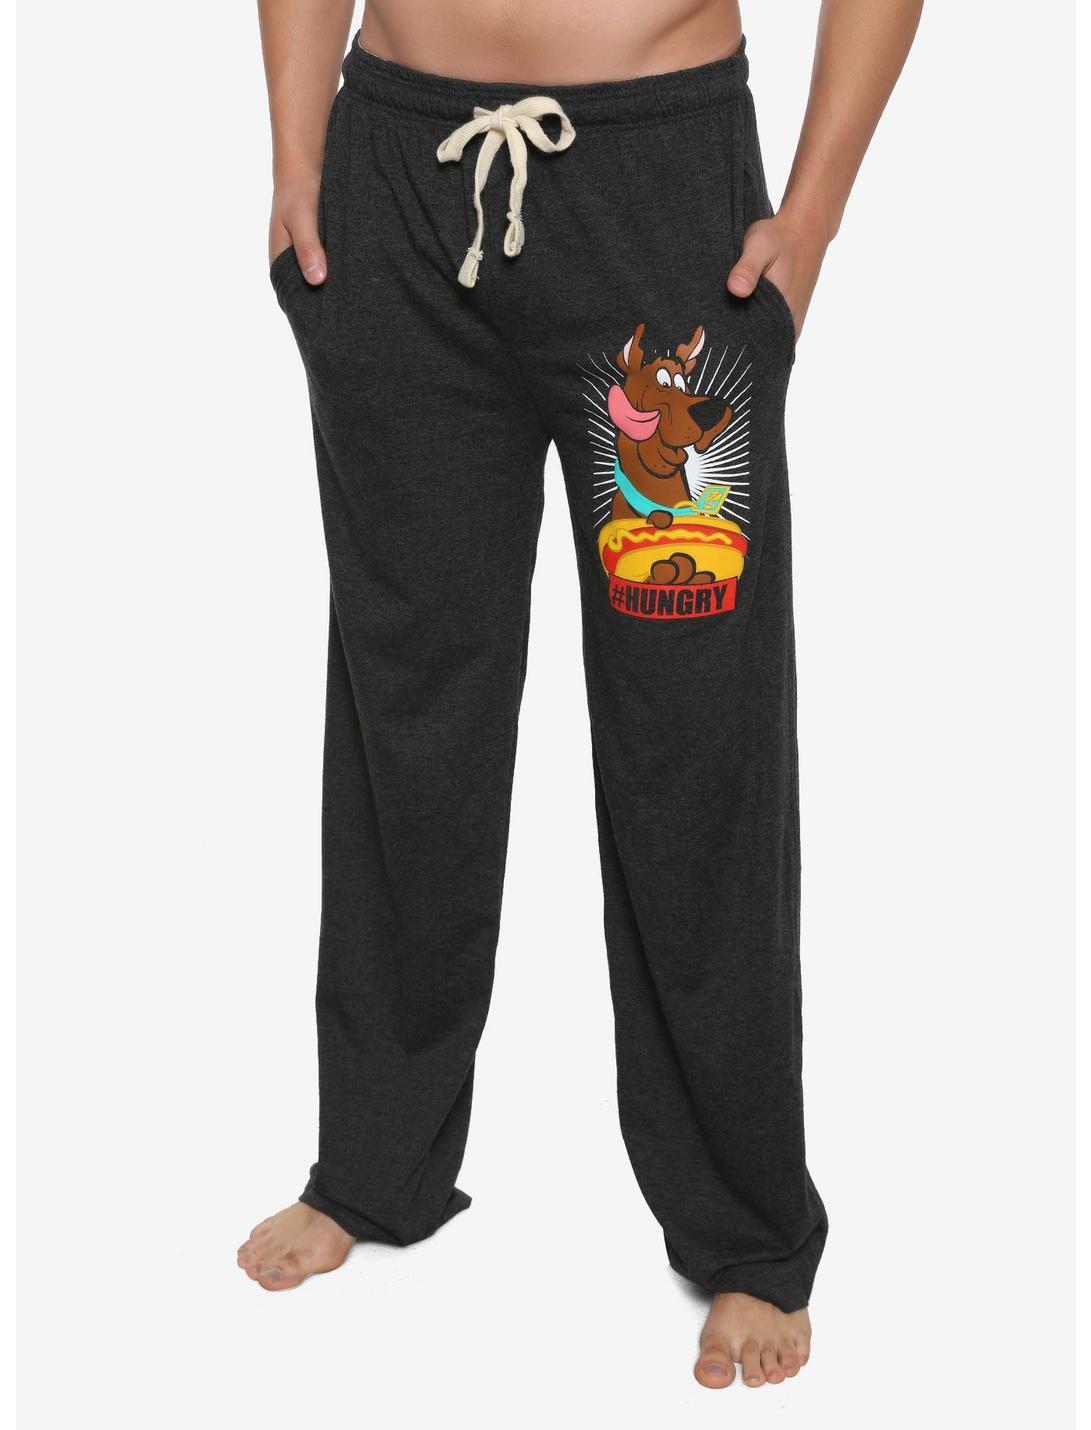 Scooby-Doo Hashtag Hotdog Pajama Pants, HEATHER, hi-res